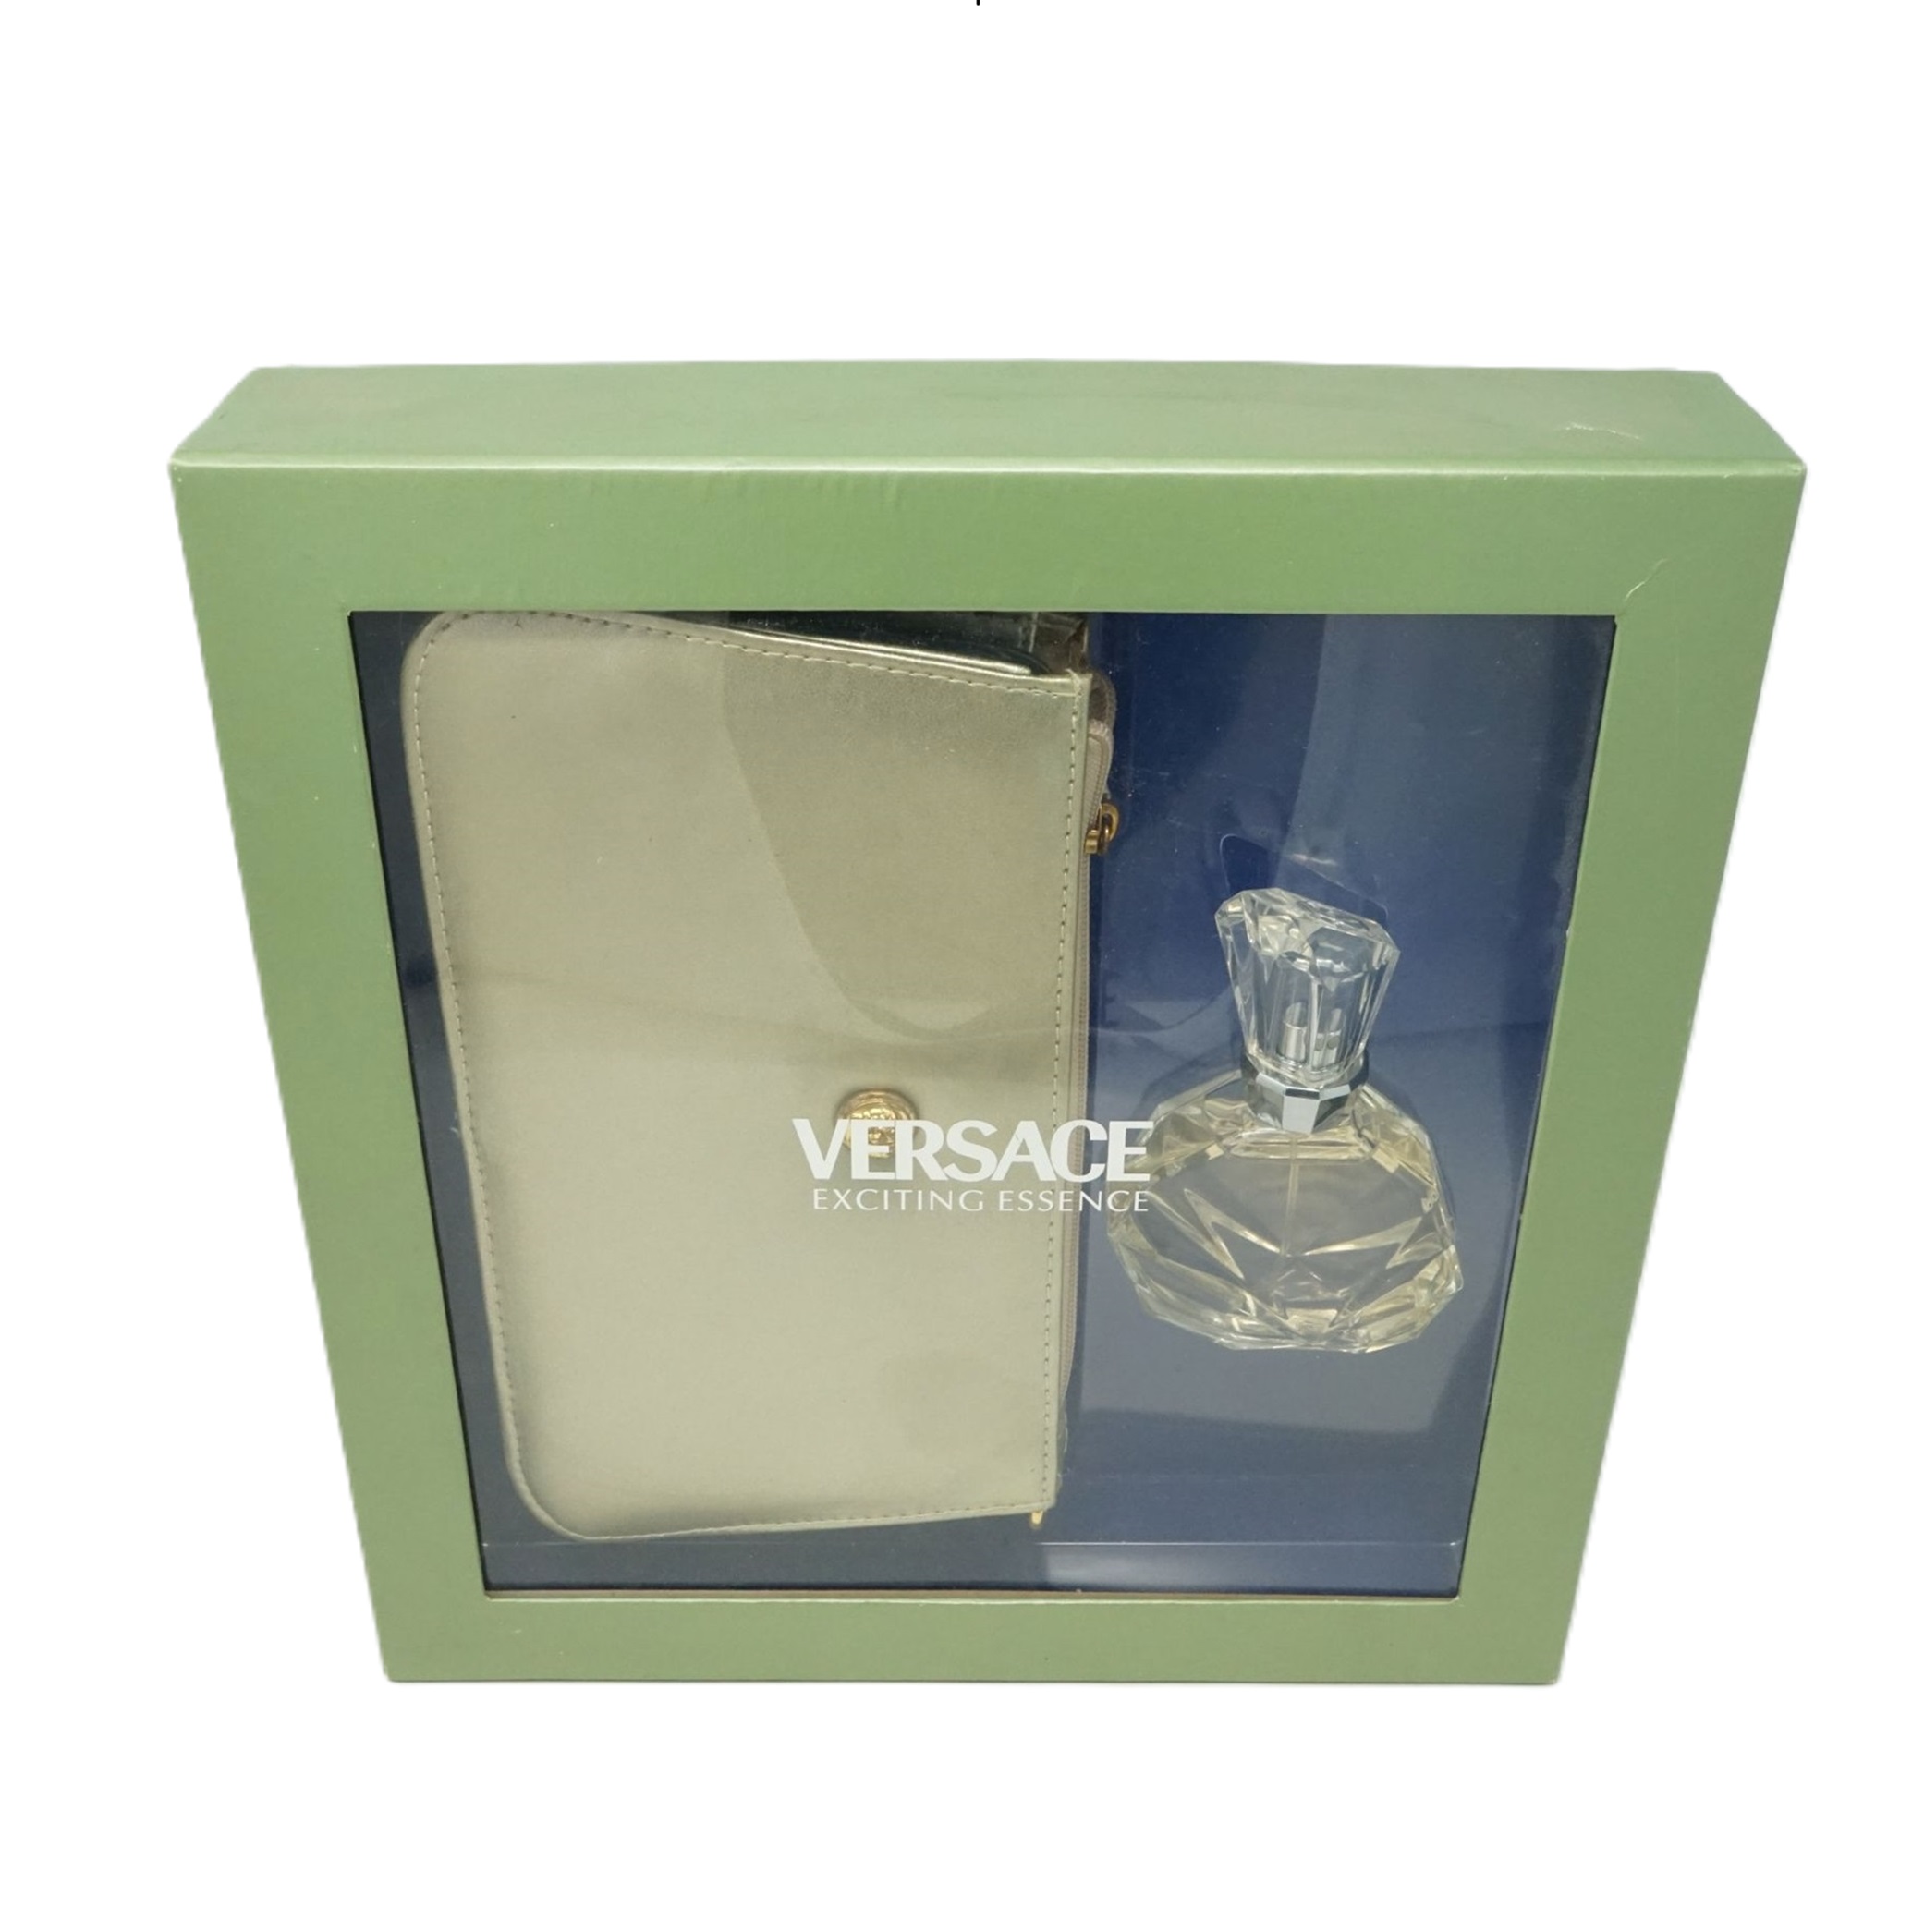 Versace Exciting Essence Eau de Toilette 50ml + Tasche